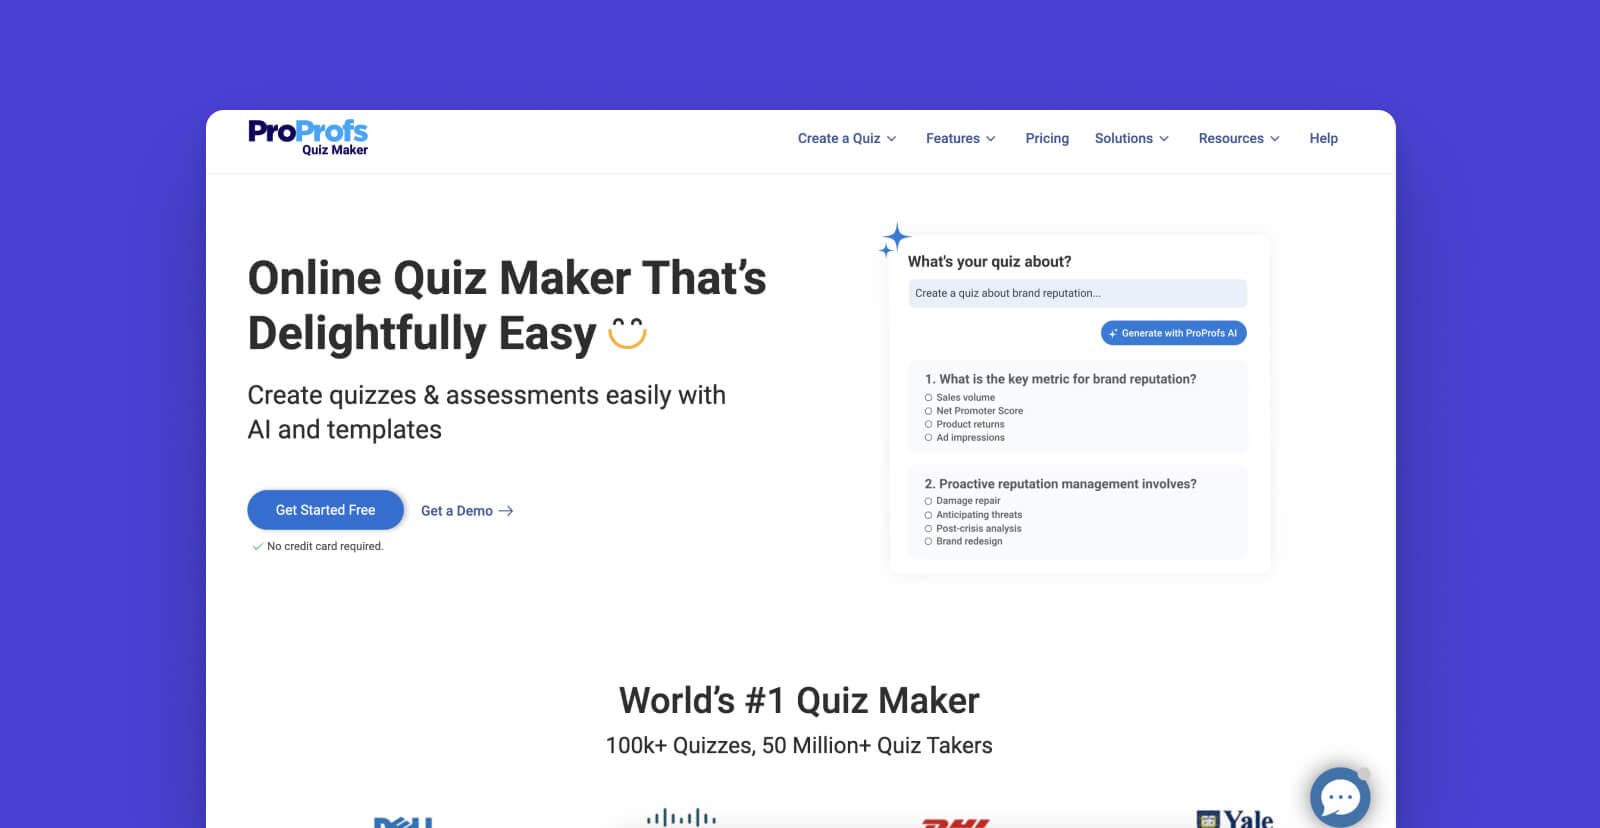 BEst online quiz makers - ProProfs